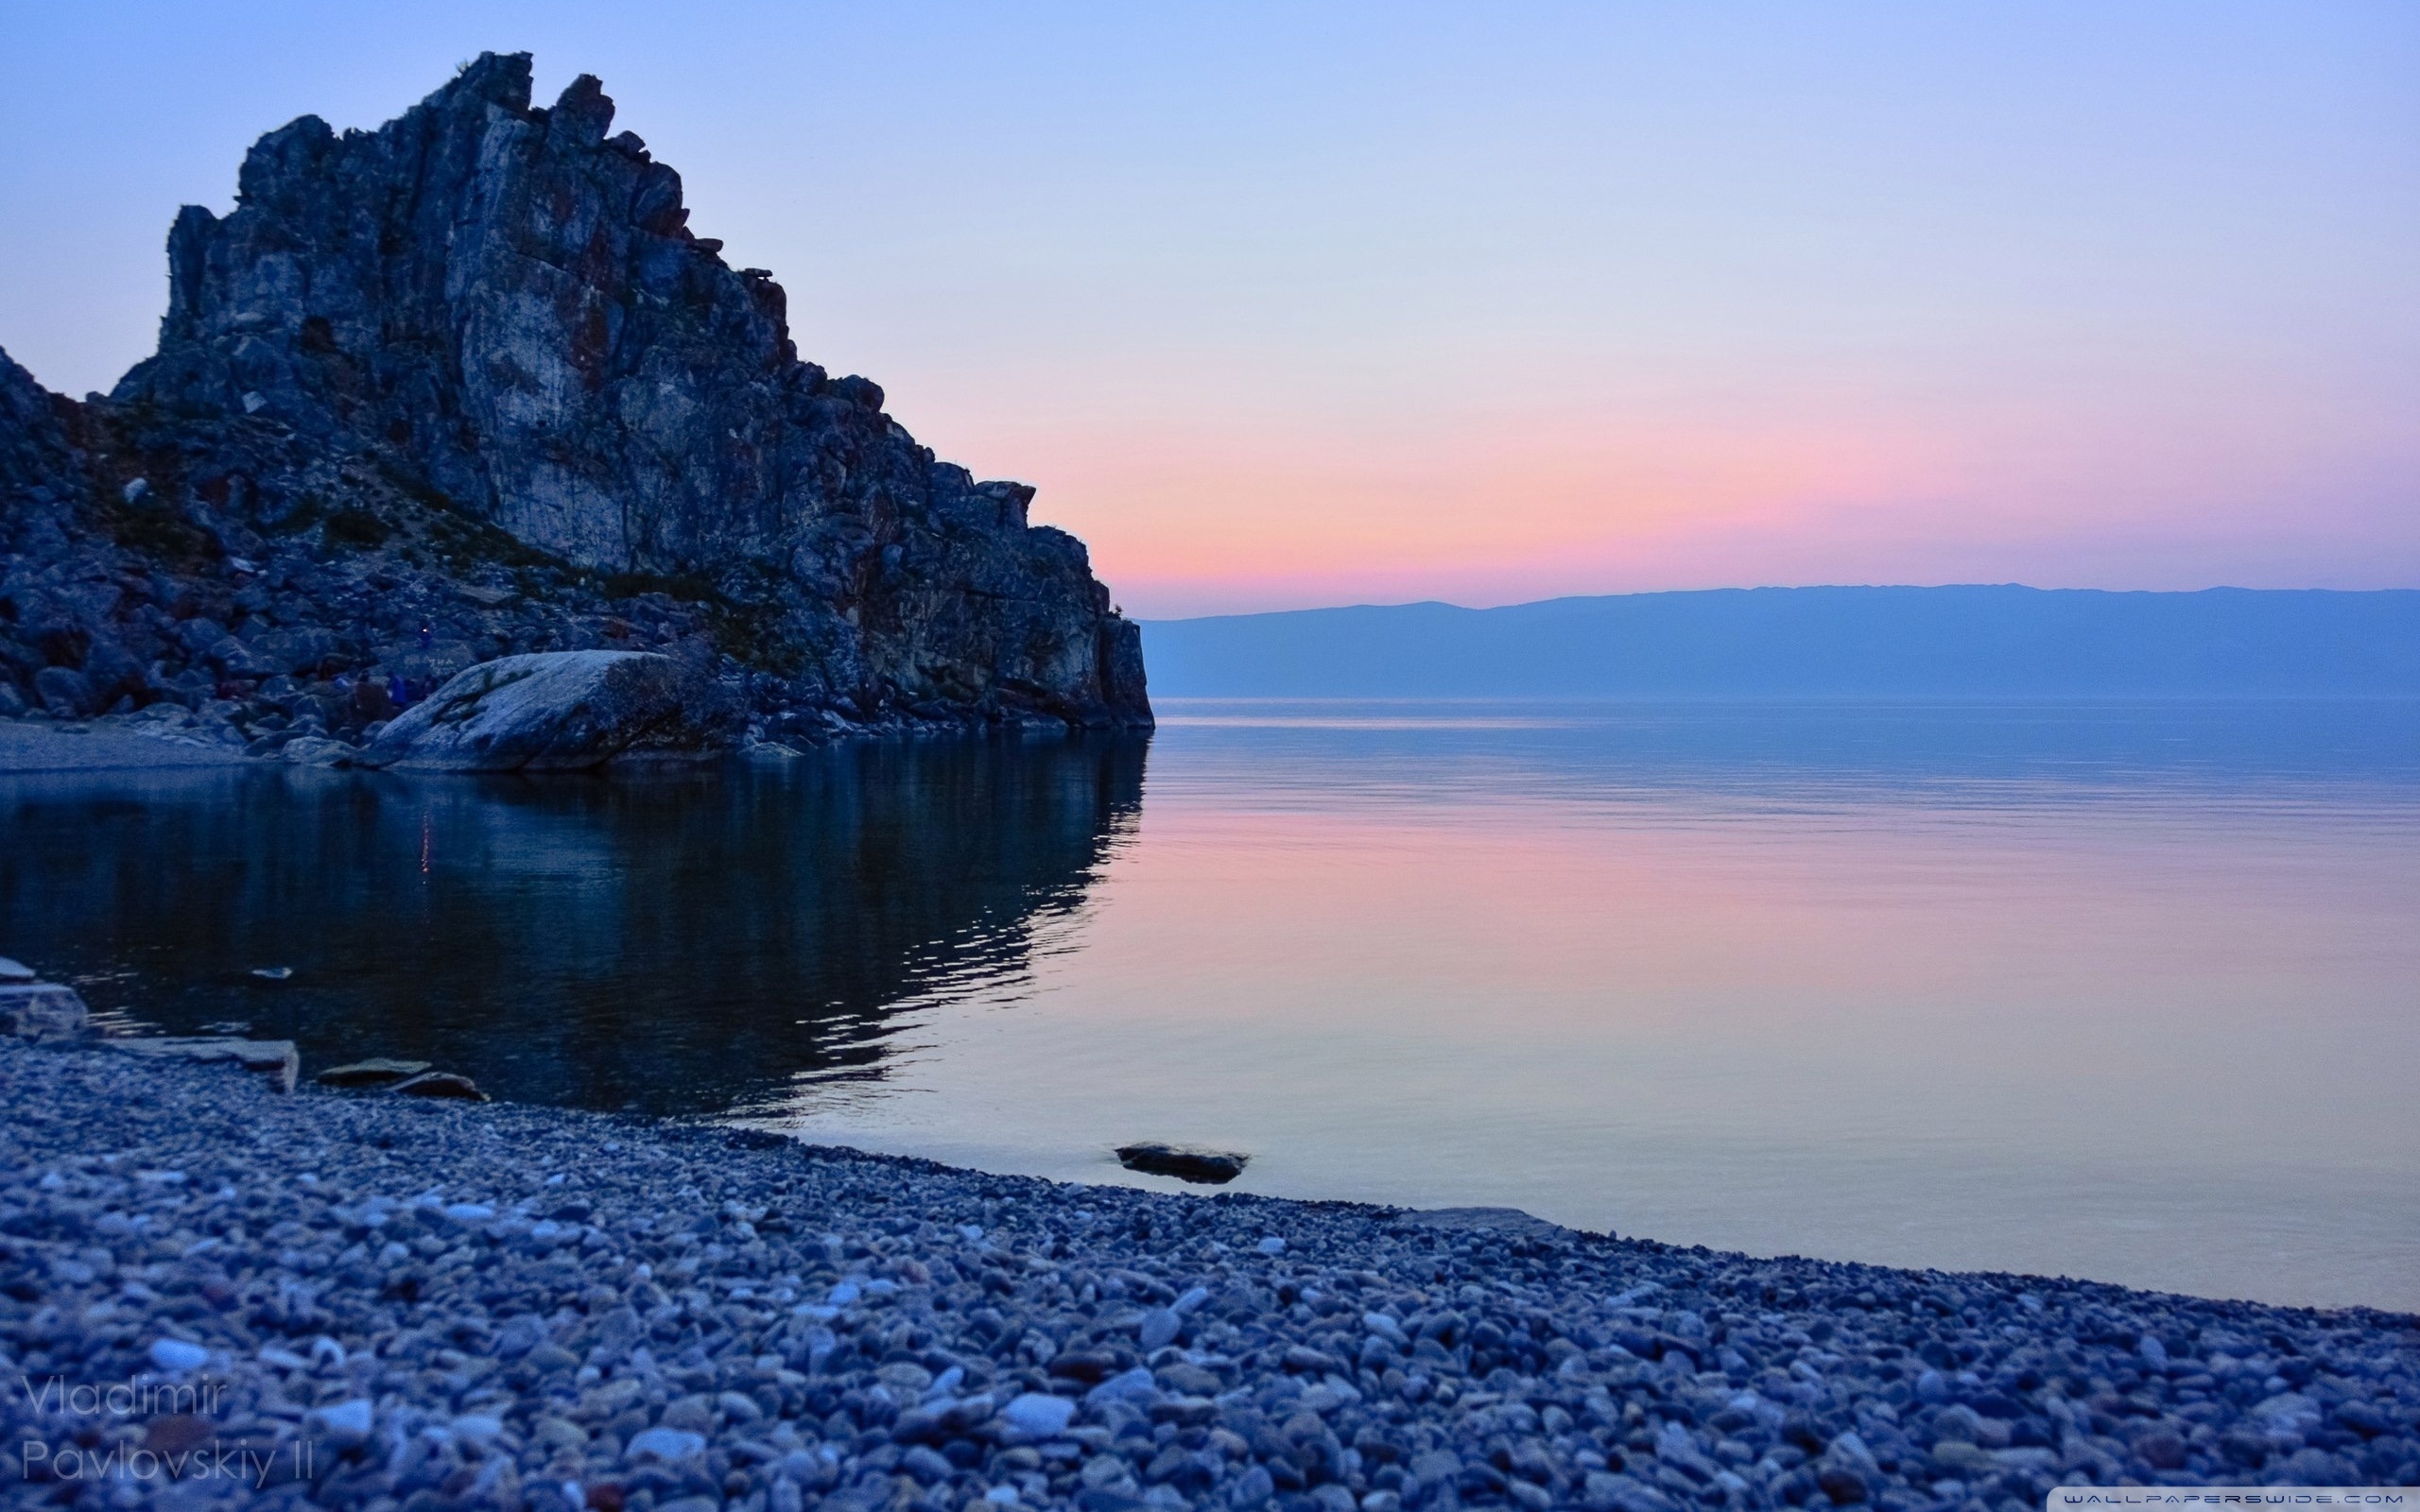 Lake Baikal, Irkutsk Region